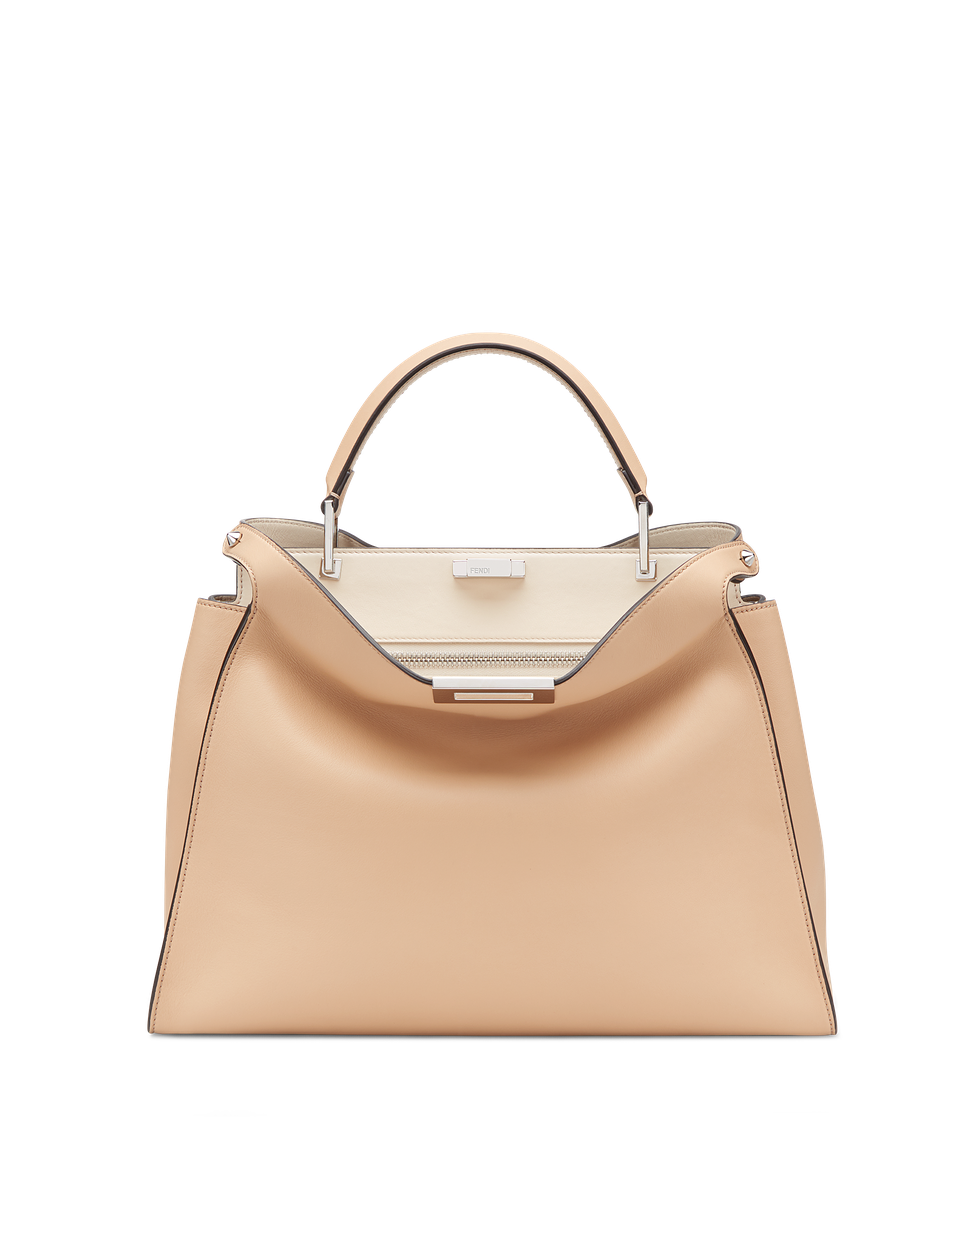 Handbag, Bag, Fashion accessory, Leather, Shoulder bag, Beige, Brown, Tan, Kelly bag, Material property, 